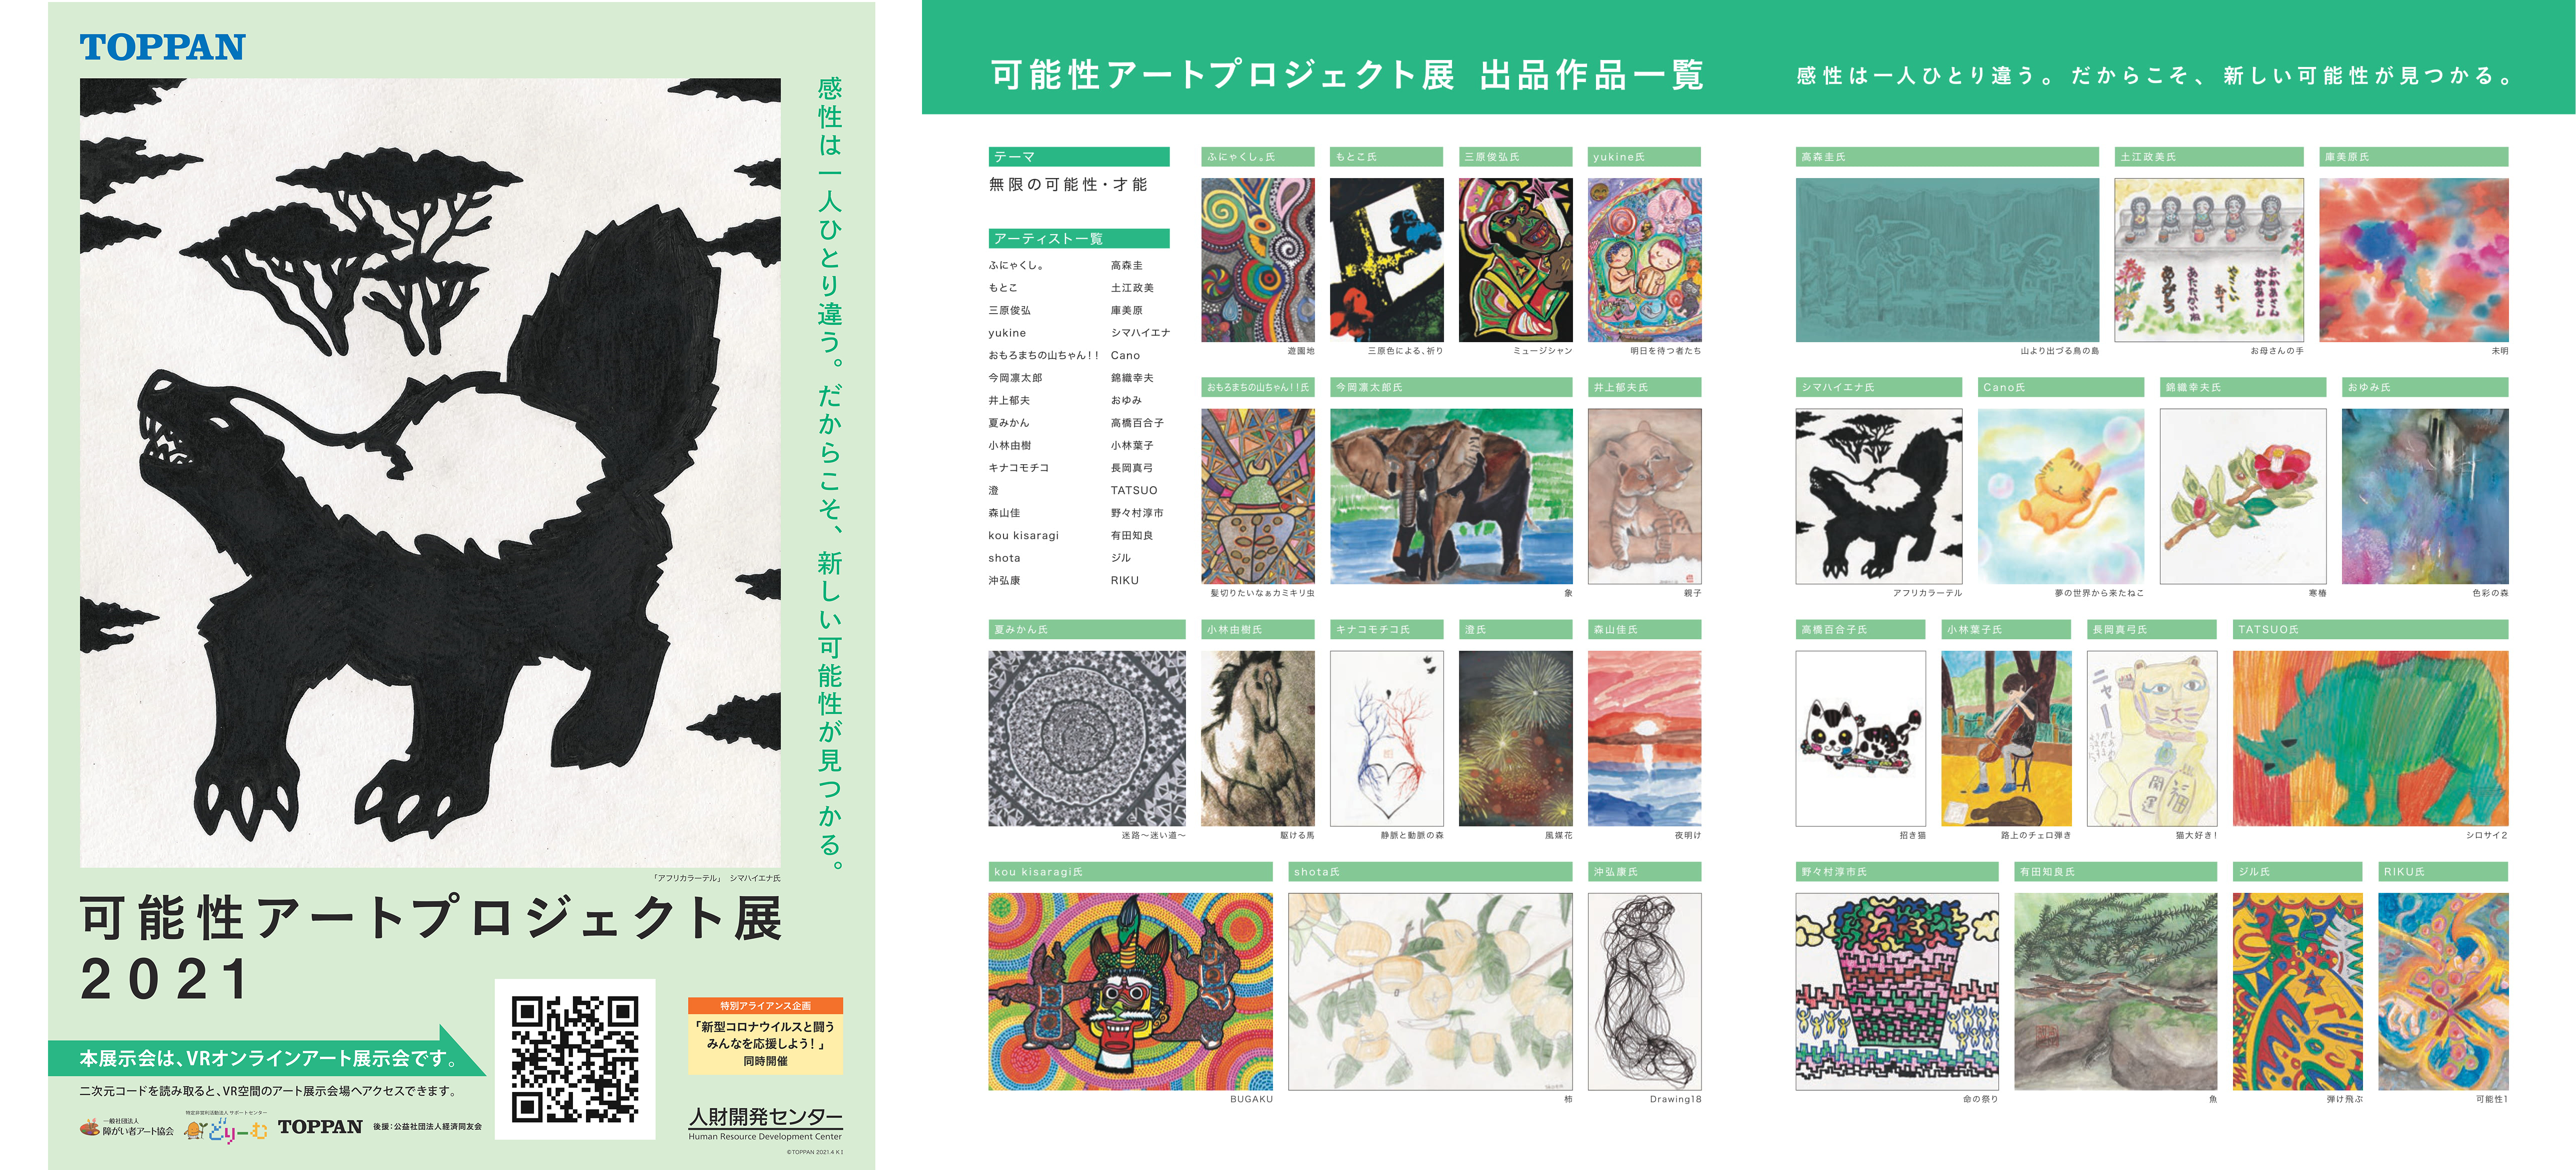 「可能性アートプロジェクト展2021」のポスターと作品一覧 © Toppan Printing Co., Ltd.